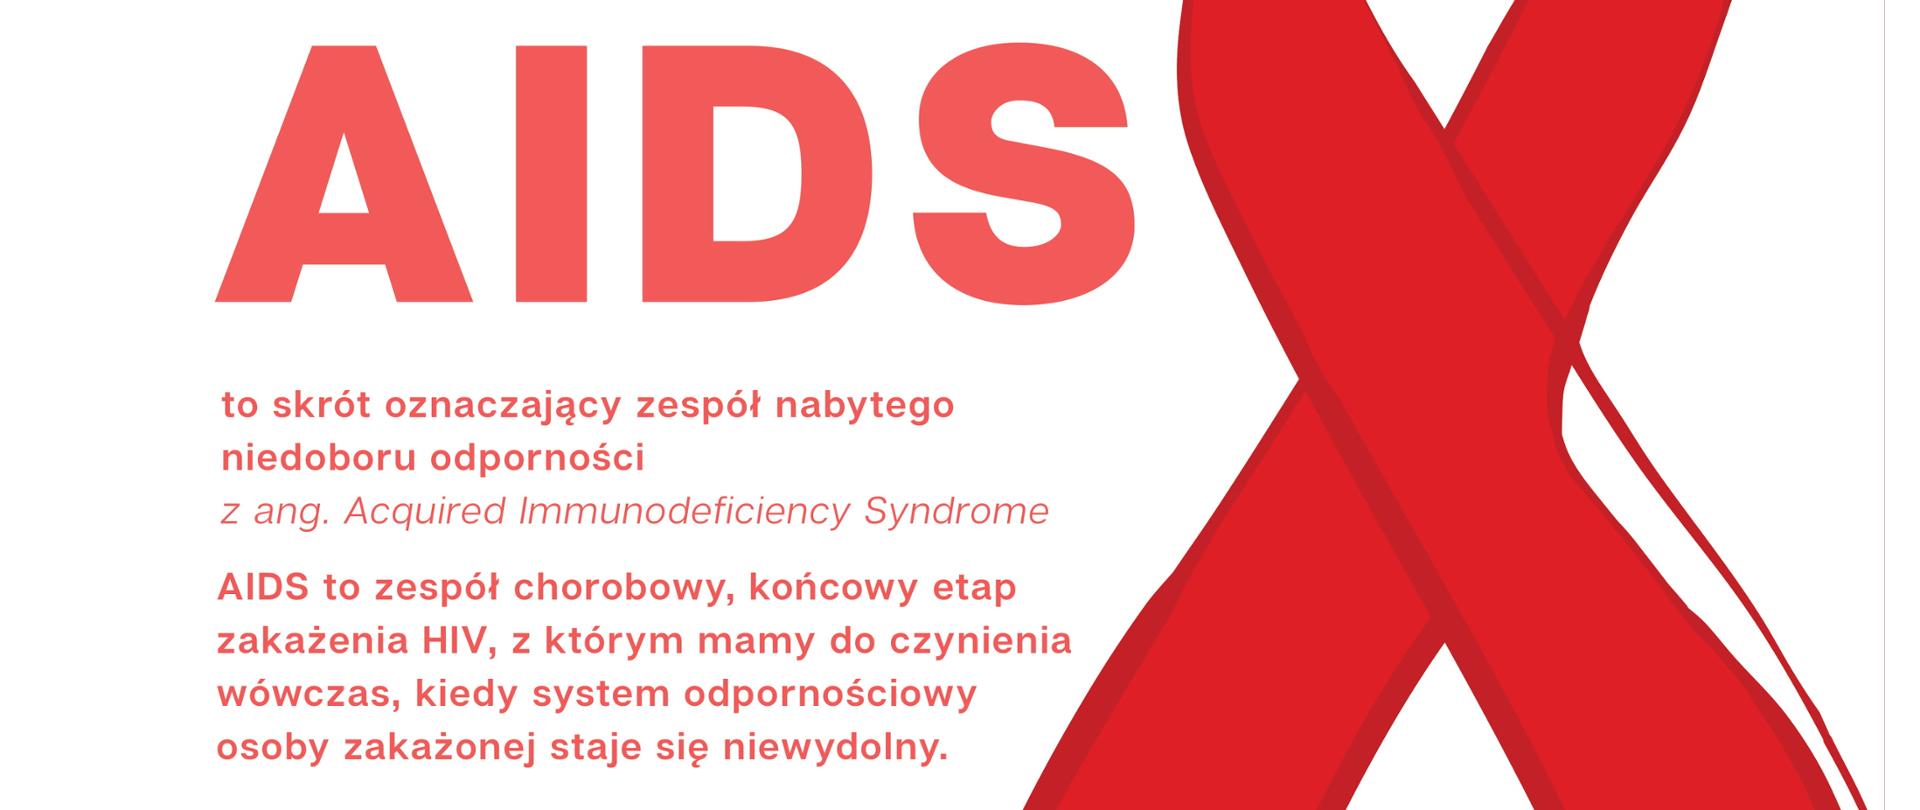 aids_plakat